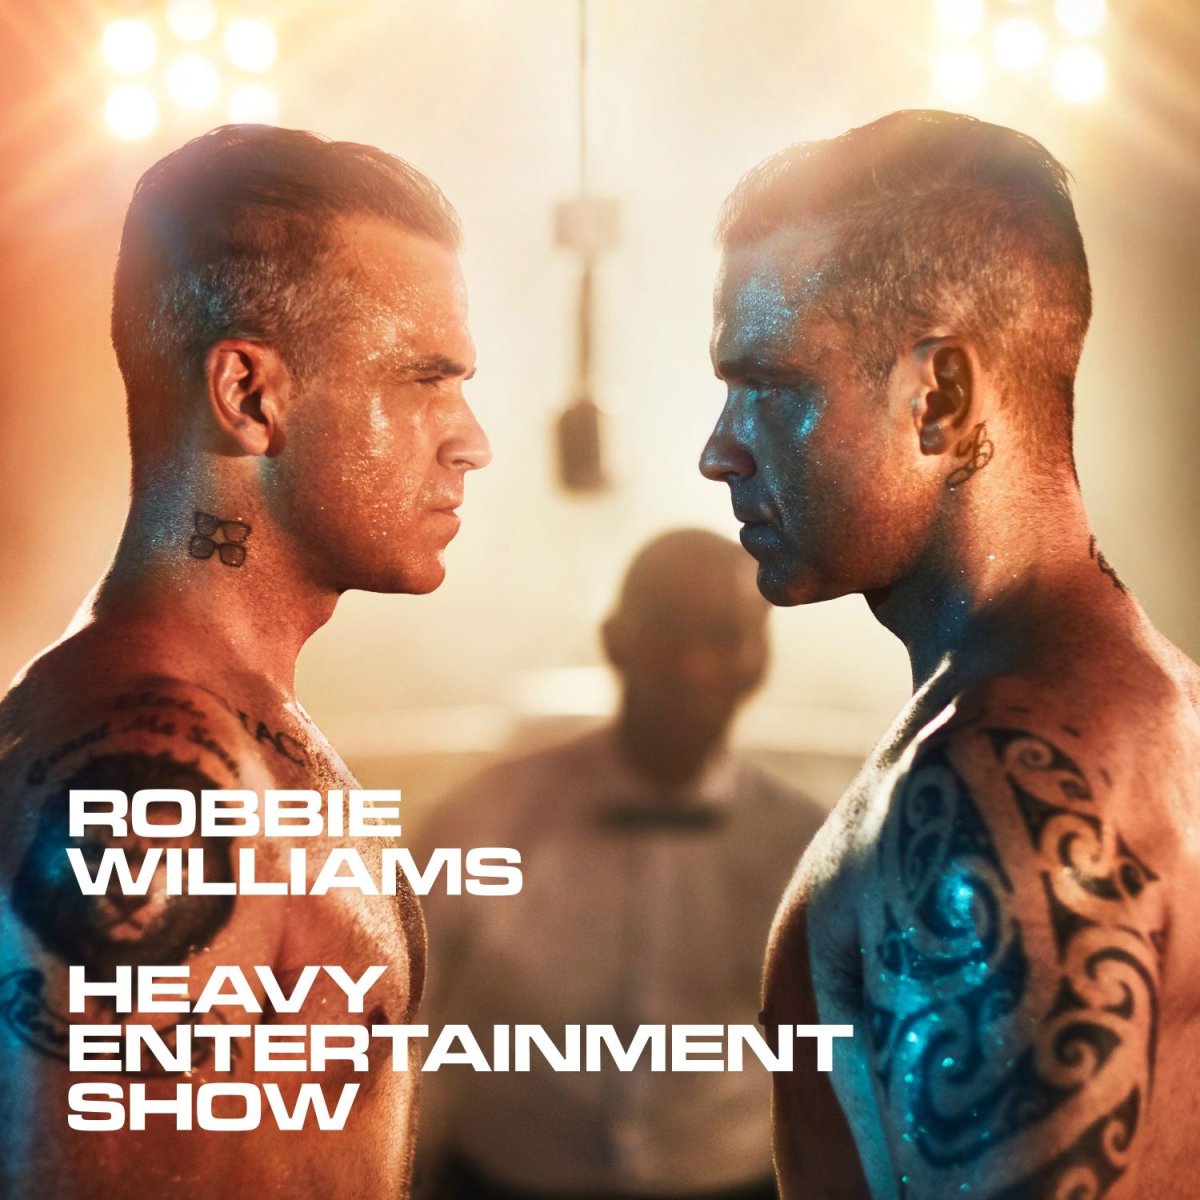 Robbie Williams' Heavy Entertainment Show tour